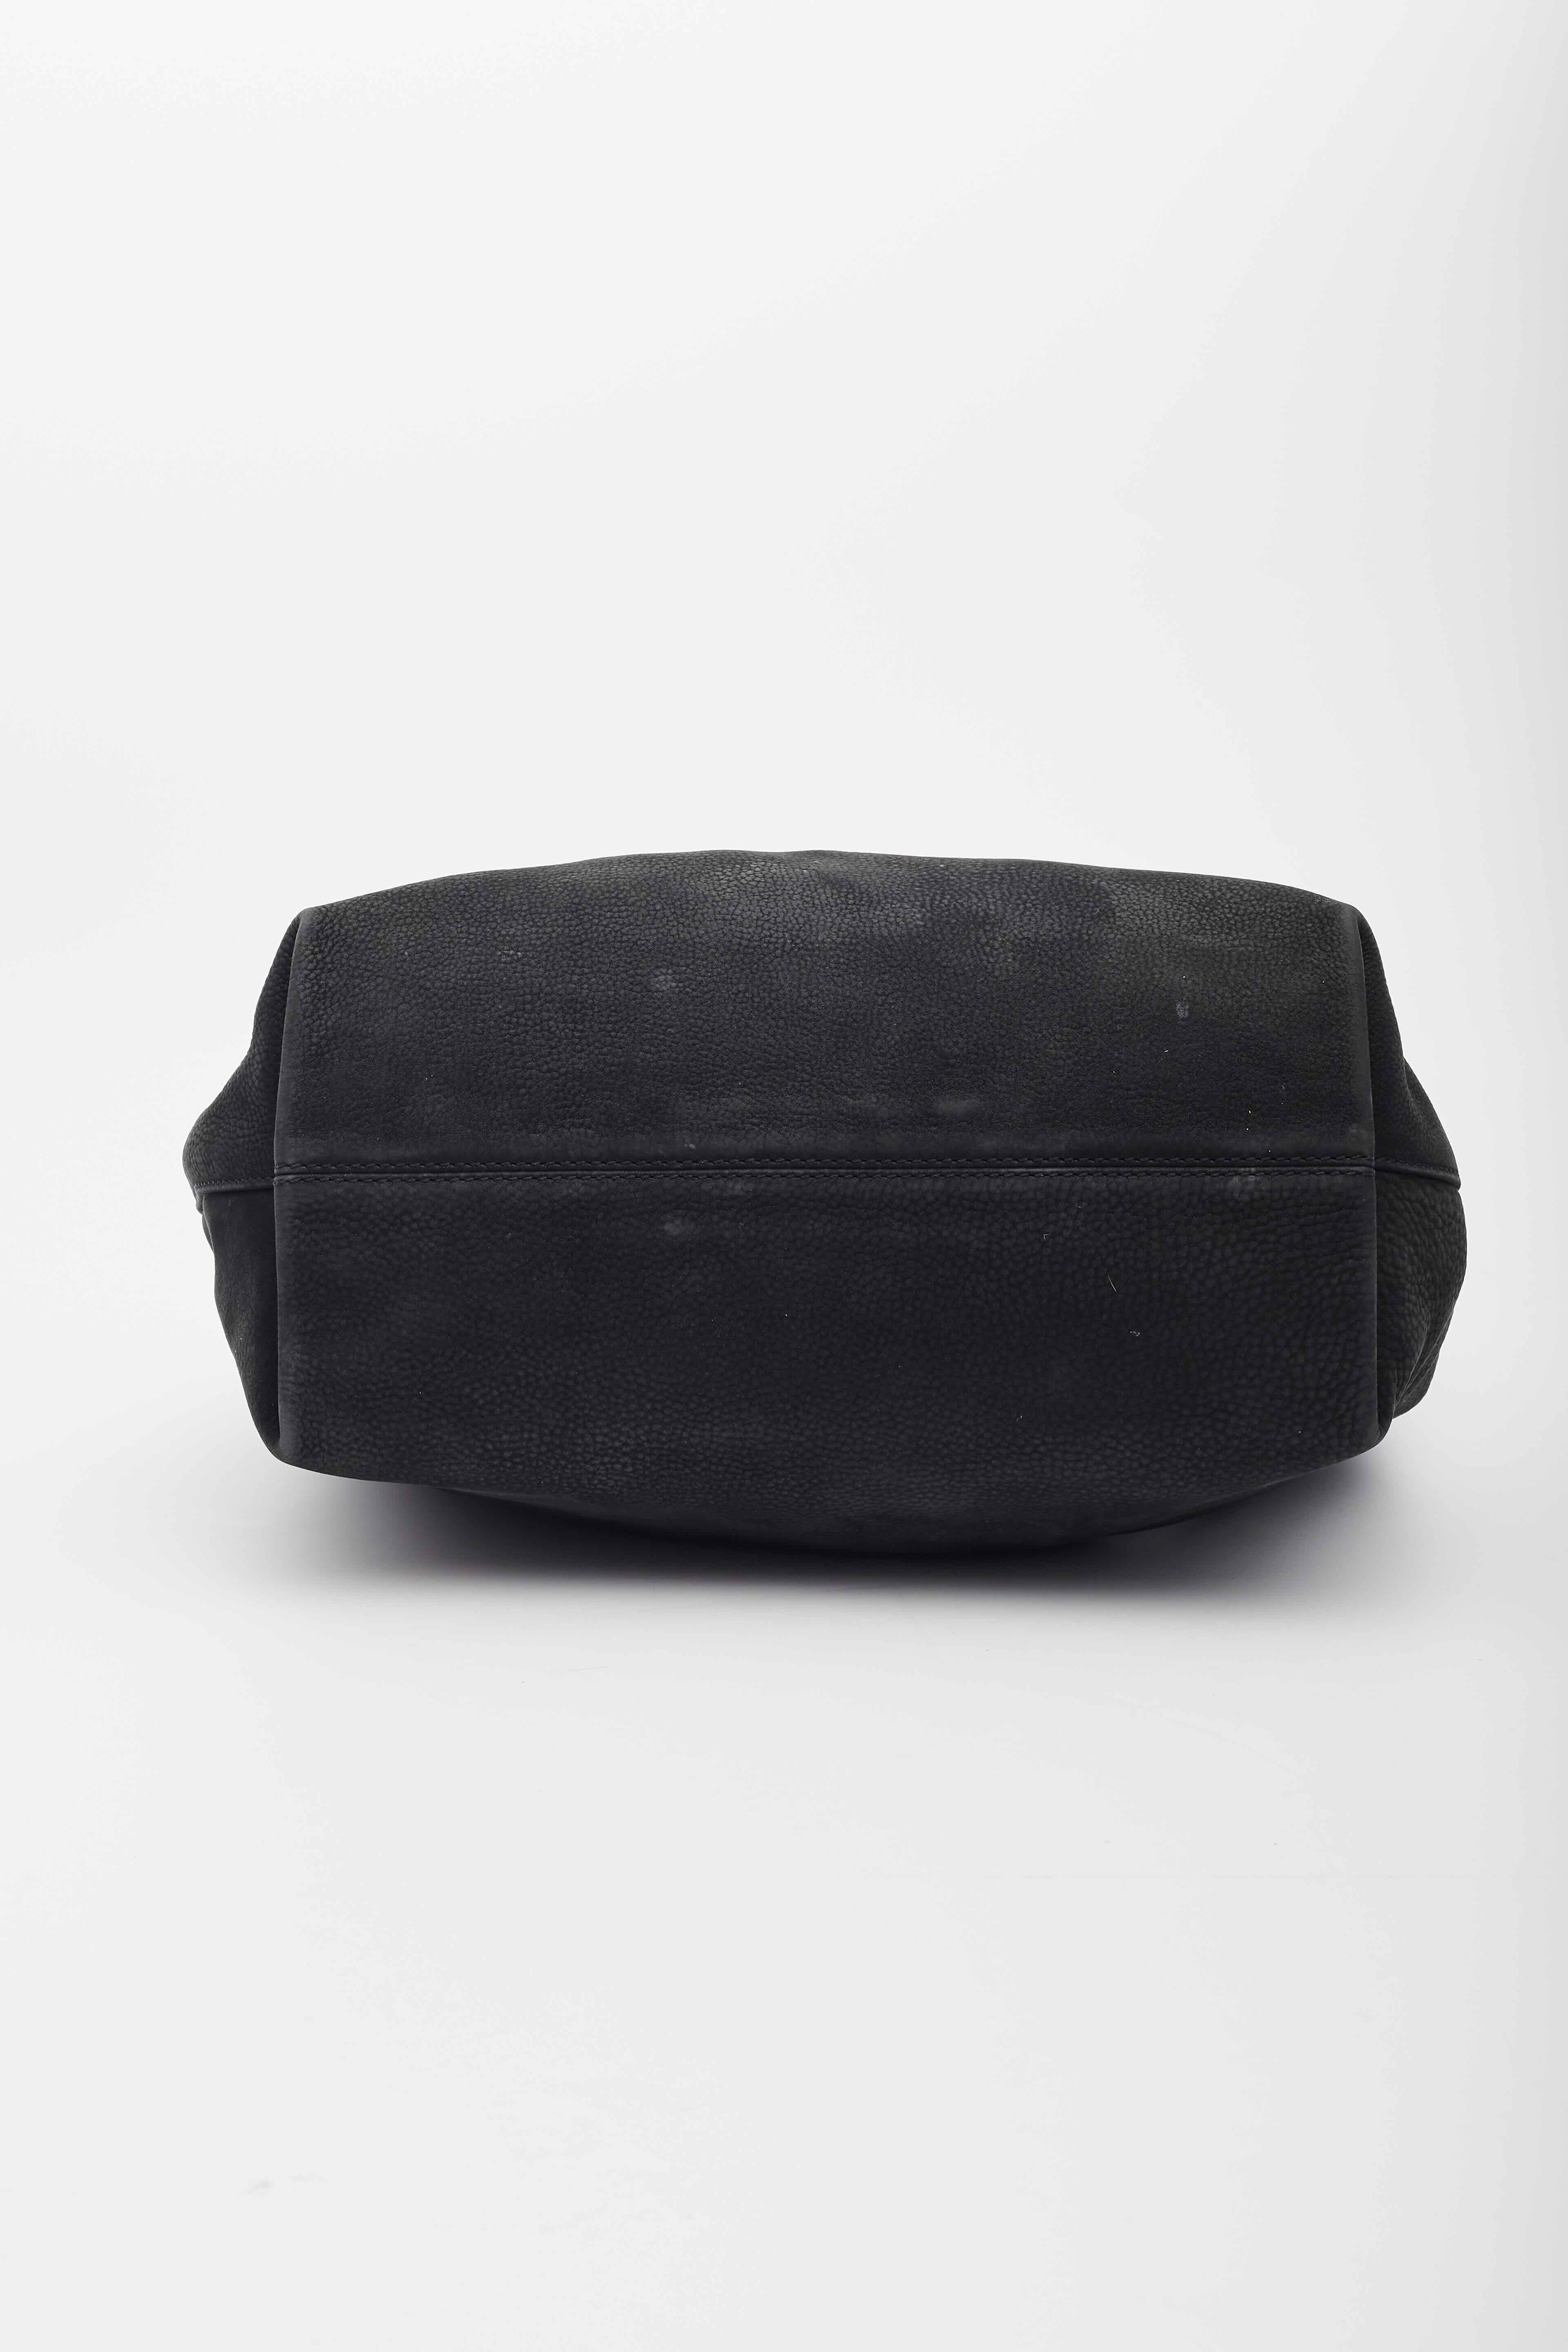 Fendi Black Leather Forever Mama Shoulder Bag Large For Sale 2